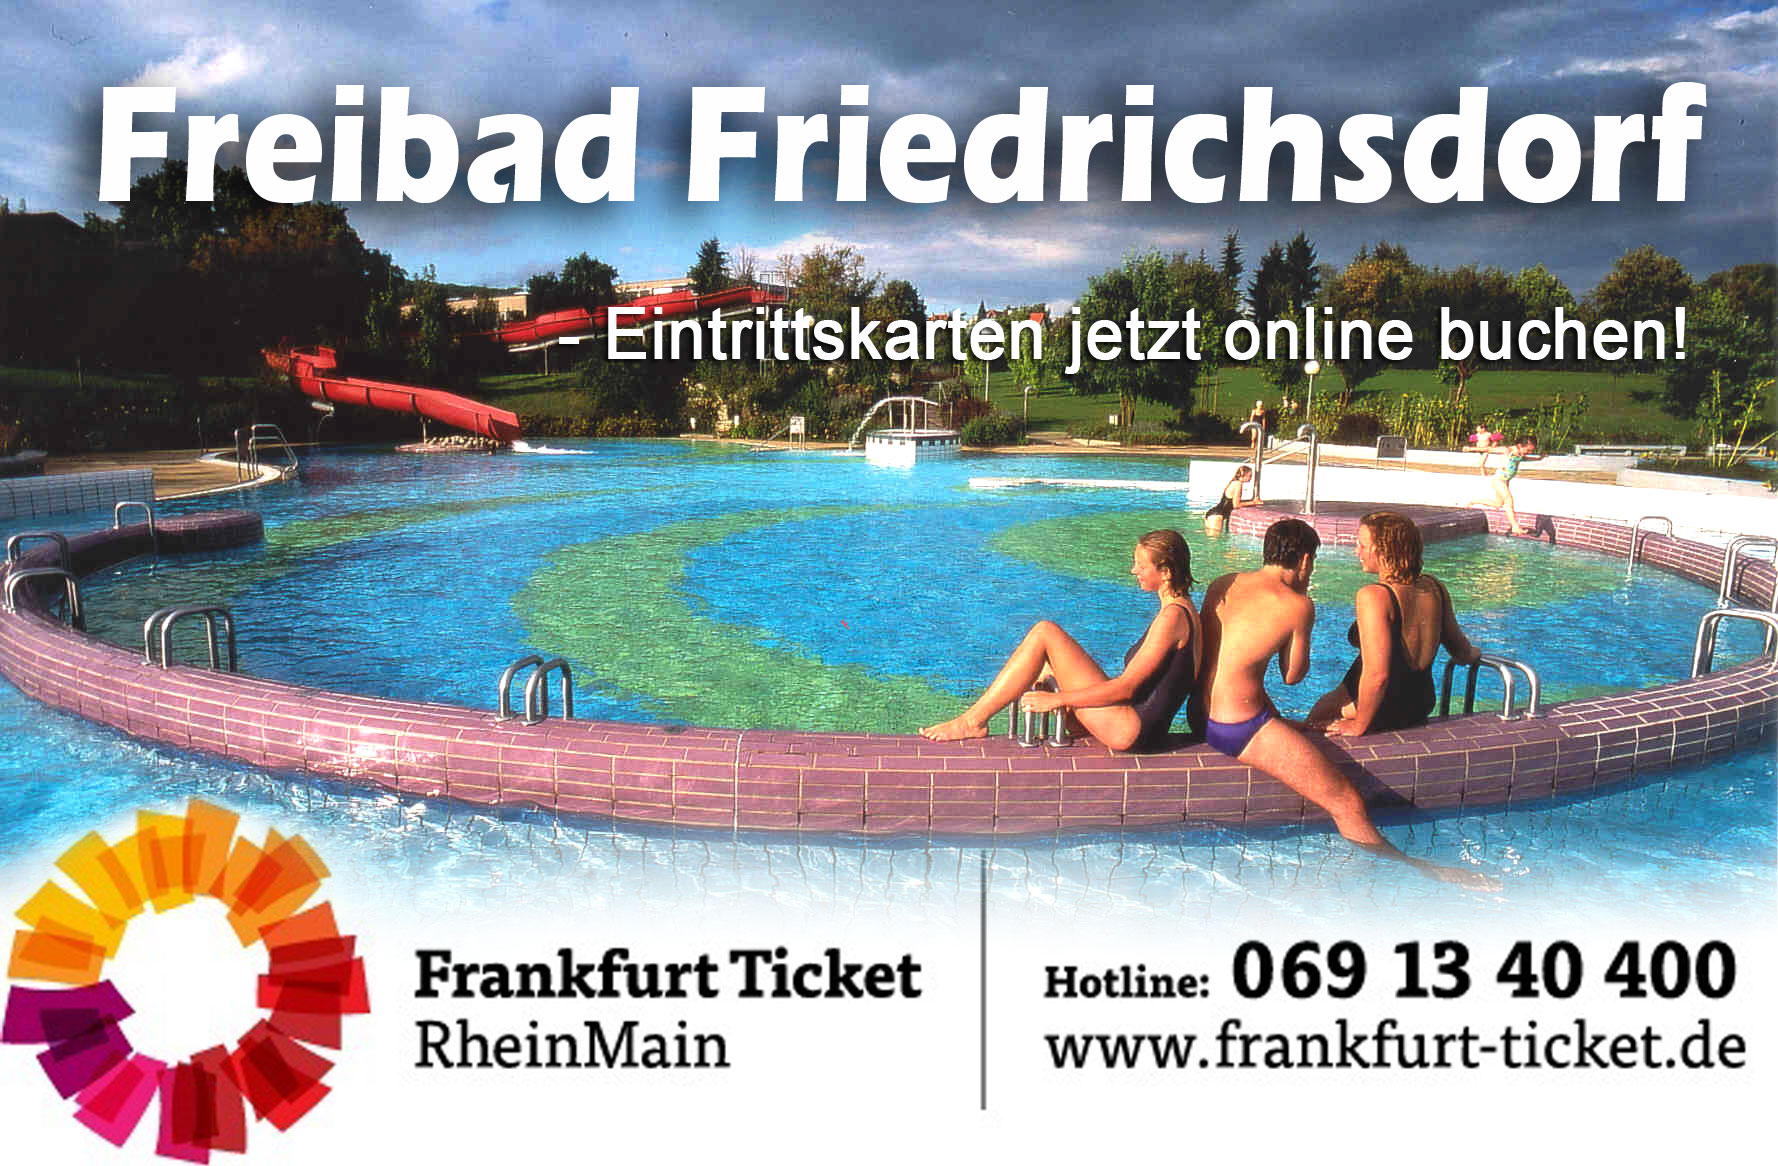 Eintrittskarten für das Freibad Friedrichsdorf jetzt buchen >>>